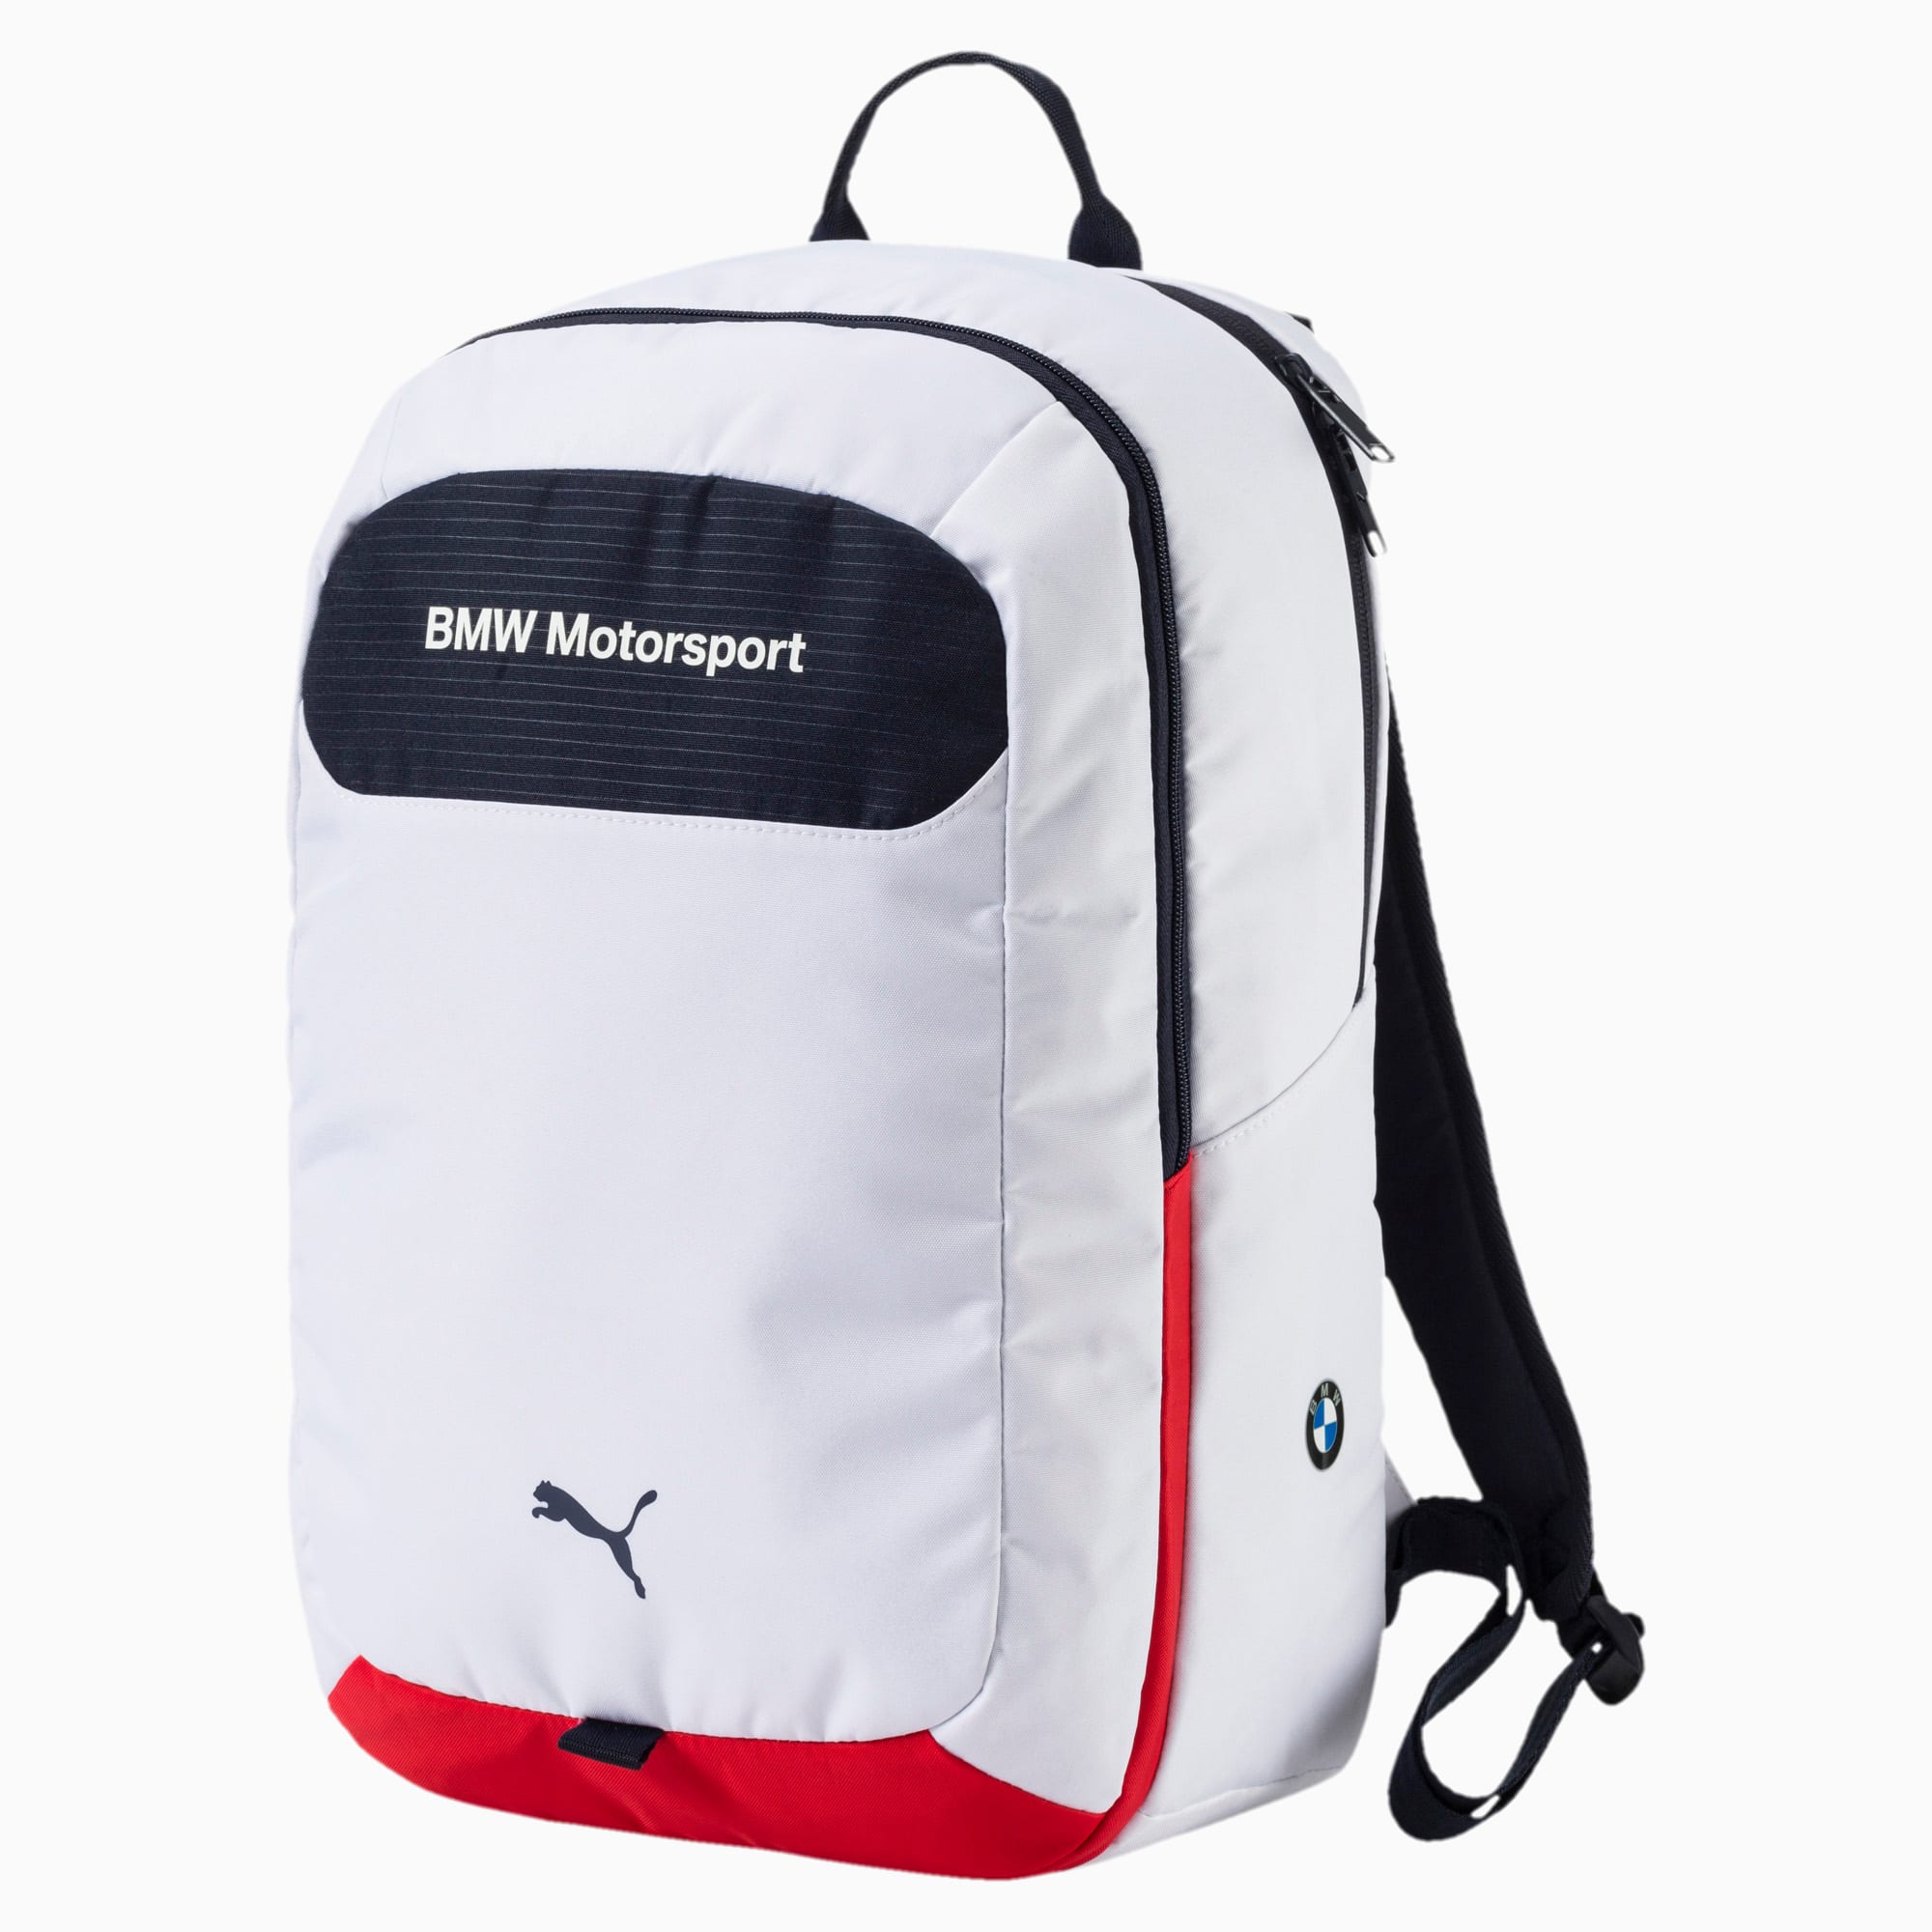 BMW Motorsport Backpack | PUMA US